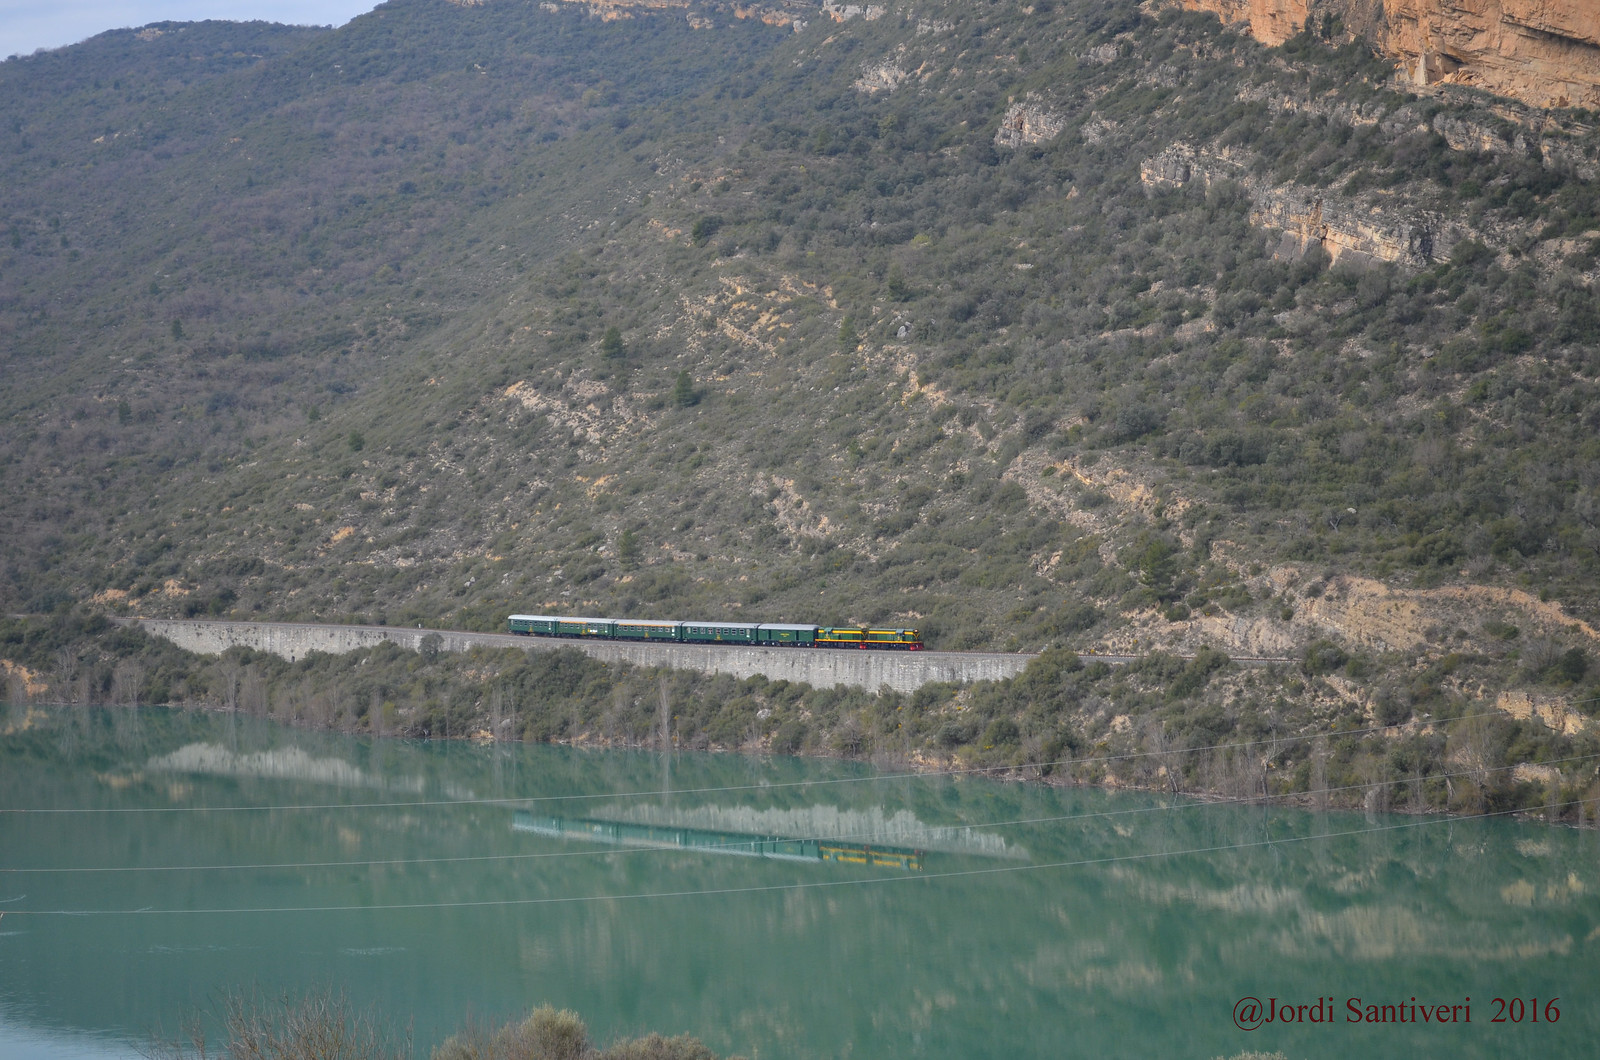 Tren dels llacs reflexat a les aigues de la cua del pantà de Camarasa